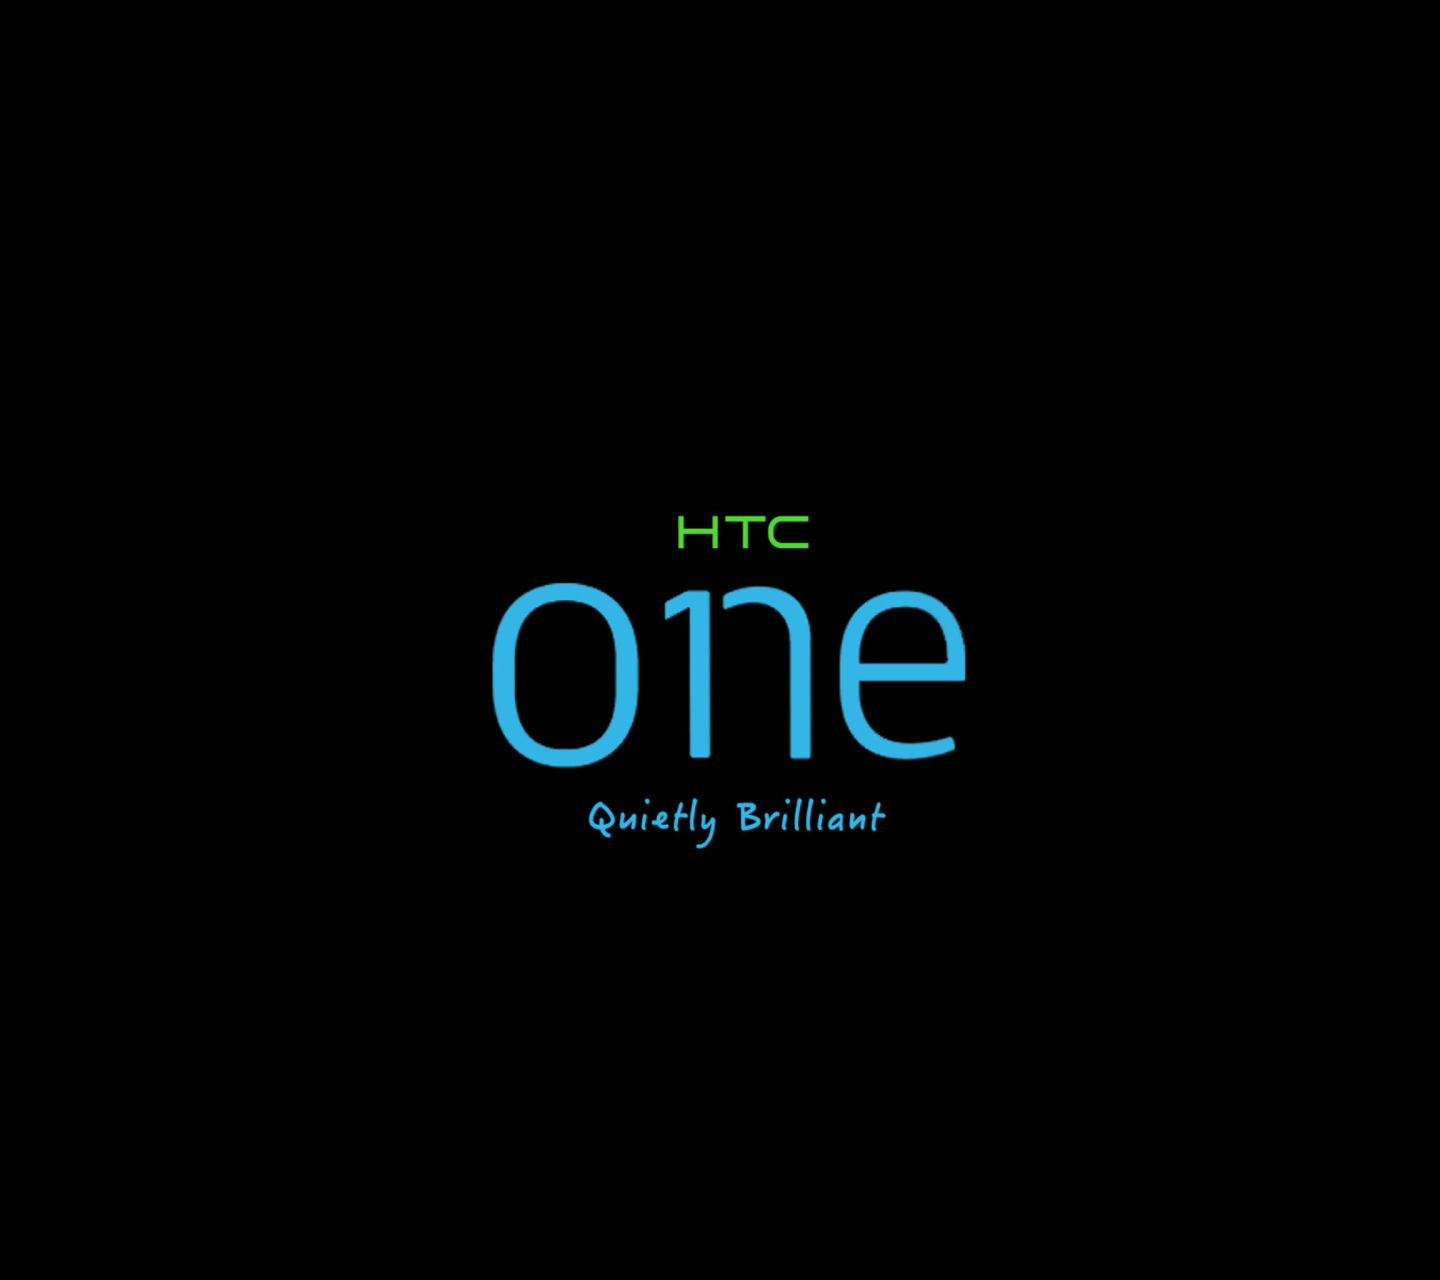 Sfondi HTC One Holo Sense 6 1440x1280